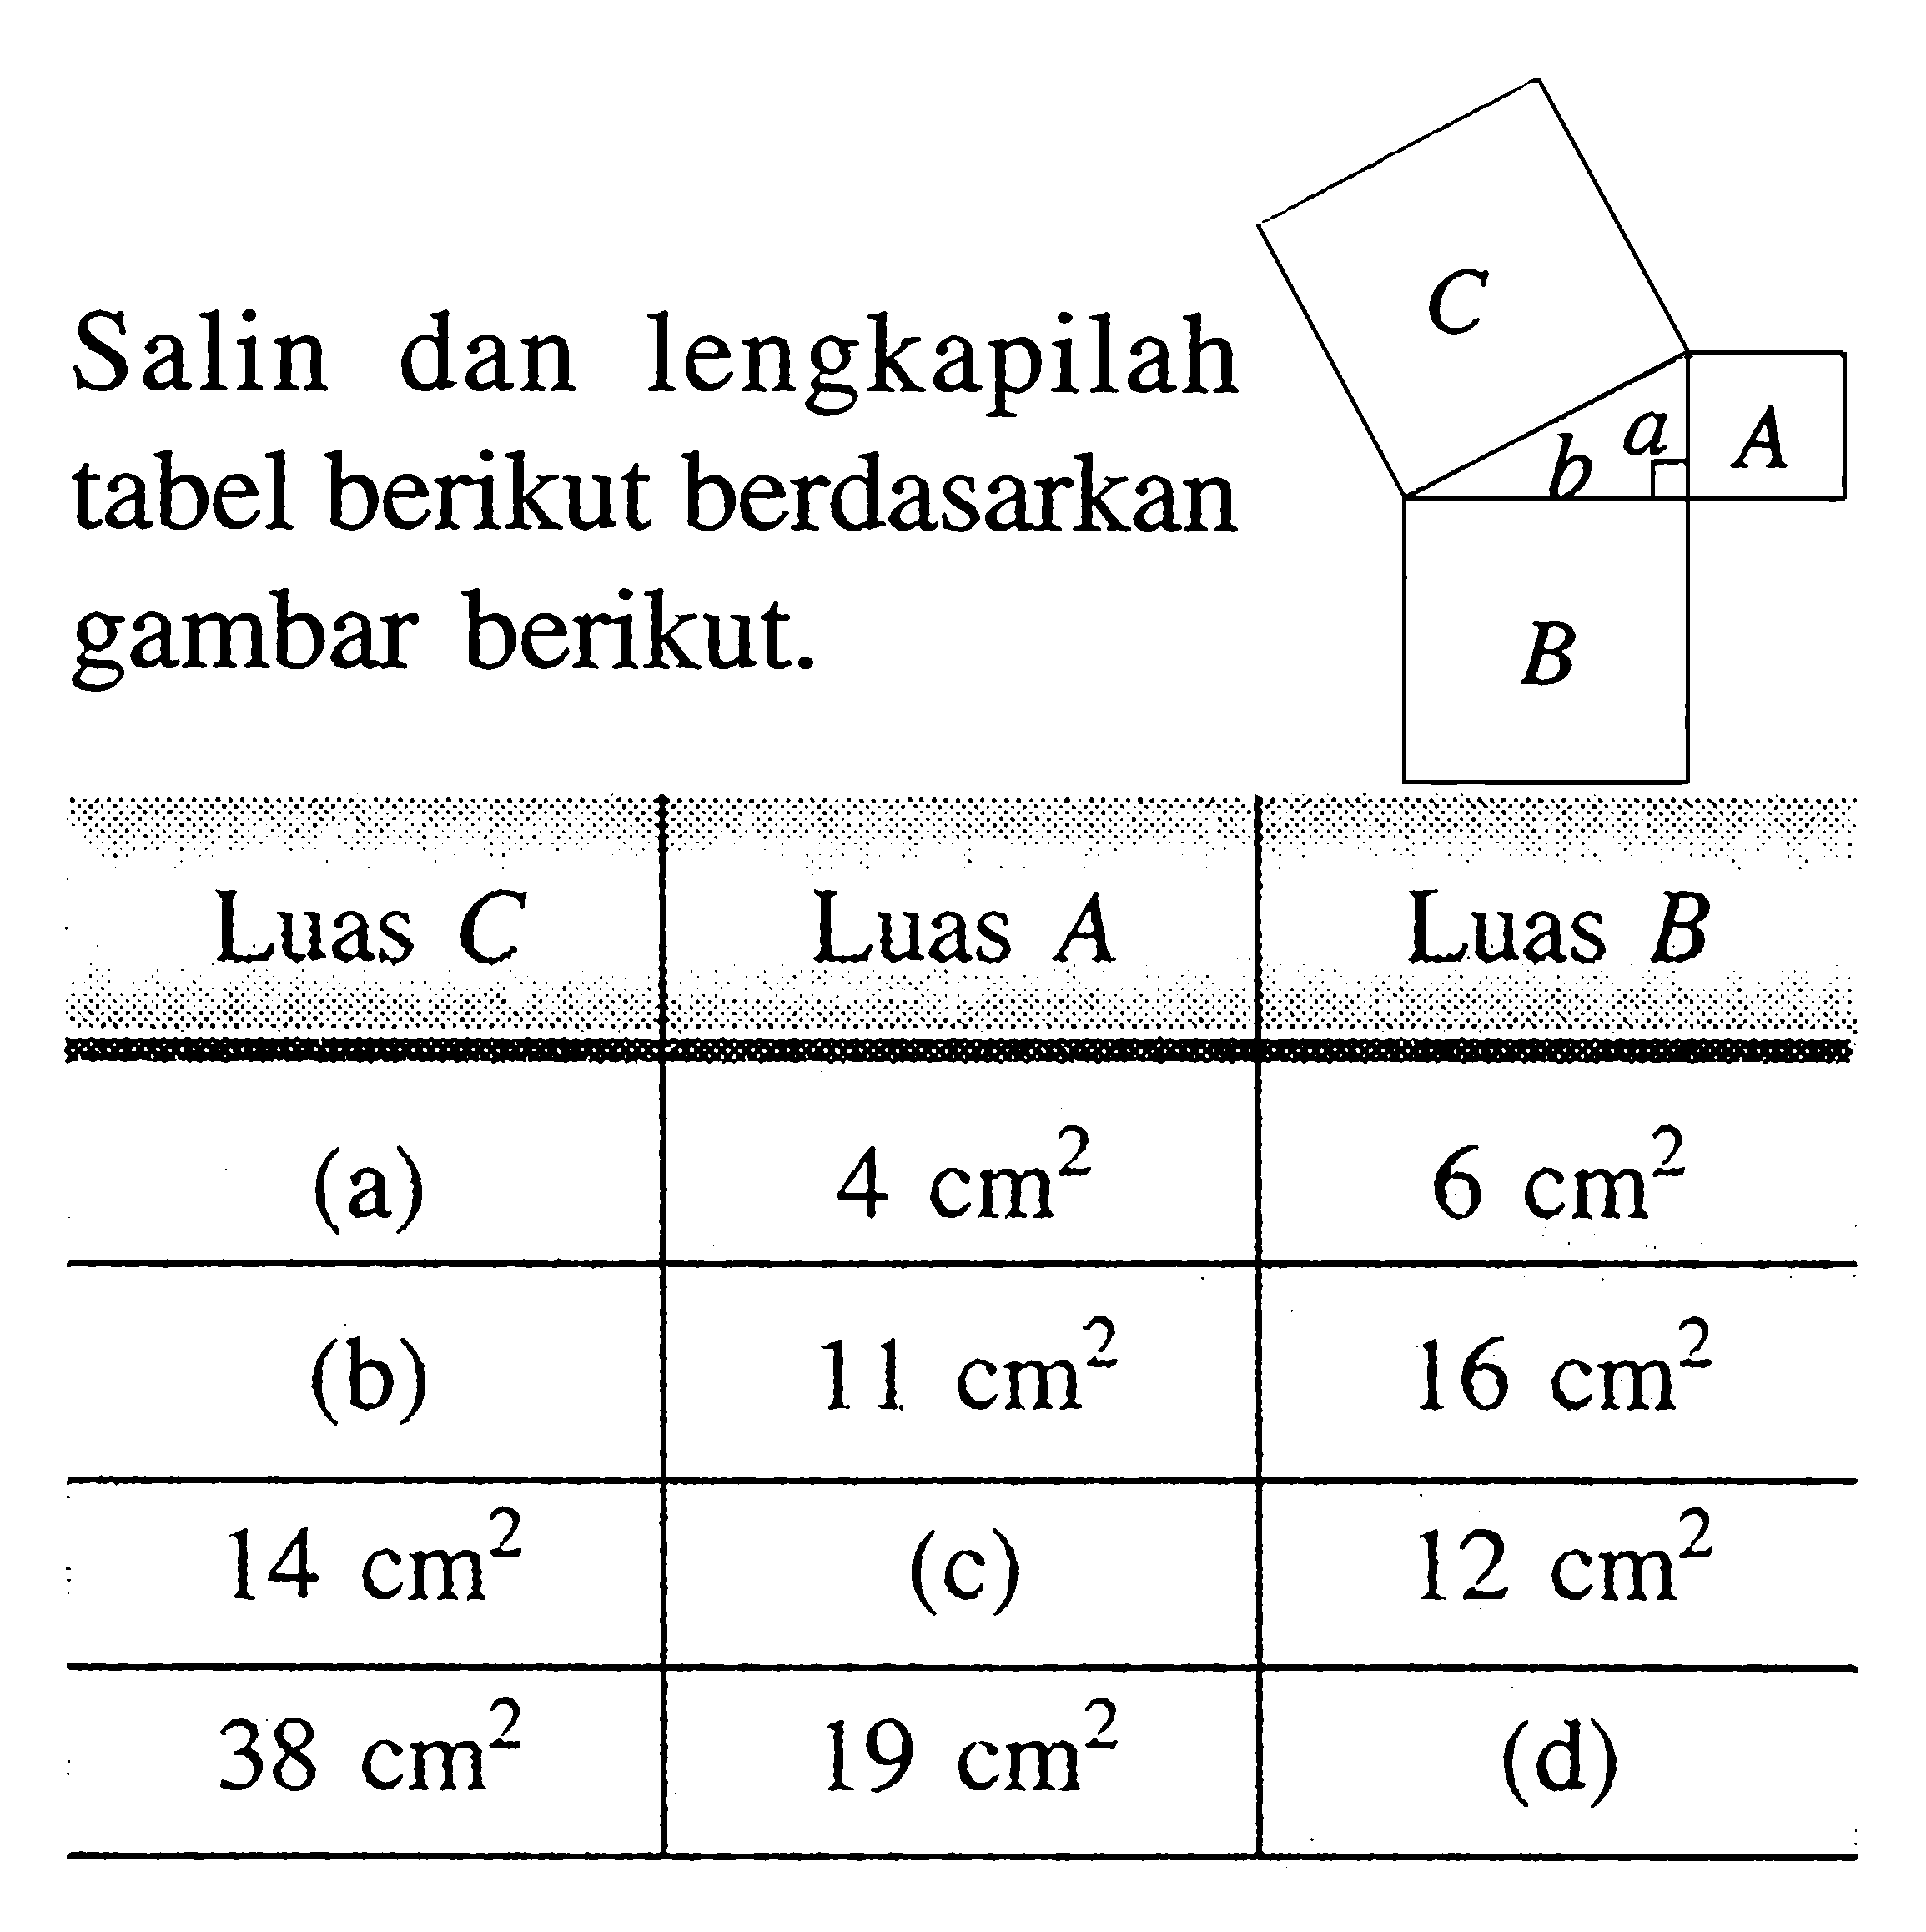 Salin dan lengkapilah tabel berikut berdasarkan gambar berikut. Luas C Luas A Luas B (a) 4 cm^2 6 cm^2 (b) 11 cm^2 16 cm^2 14 cm^2 (c) 12 cm^2 38 cm^2 19 cm^2 (d)  

